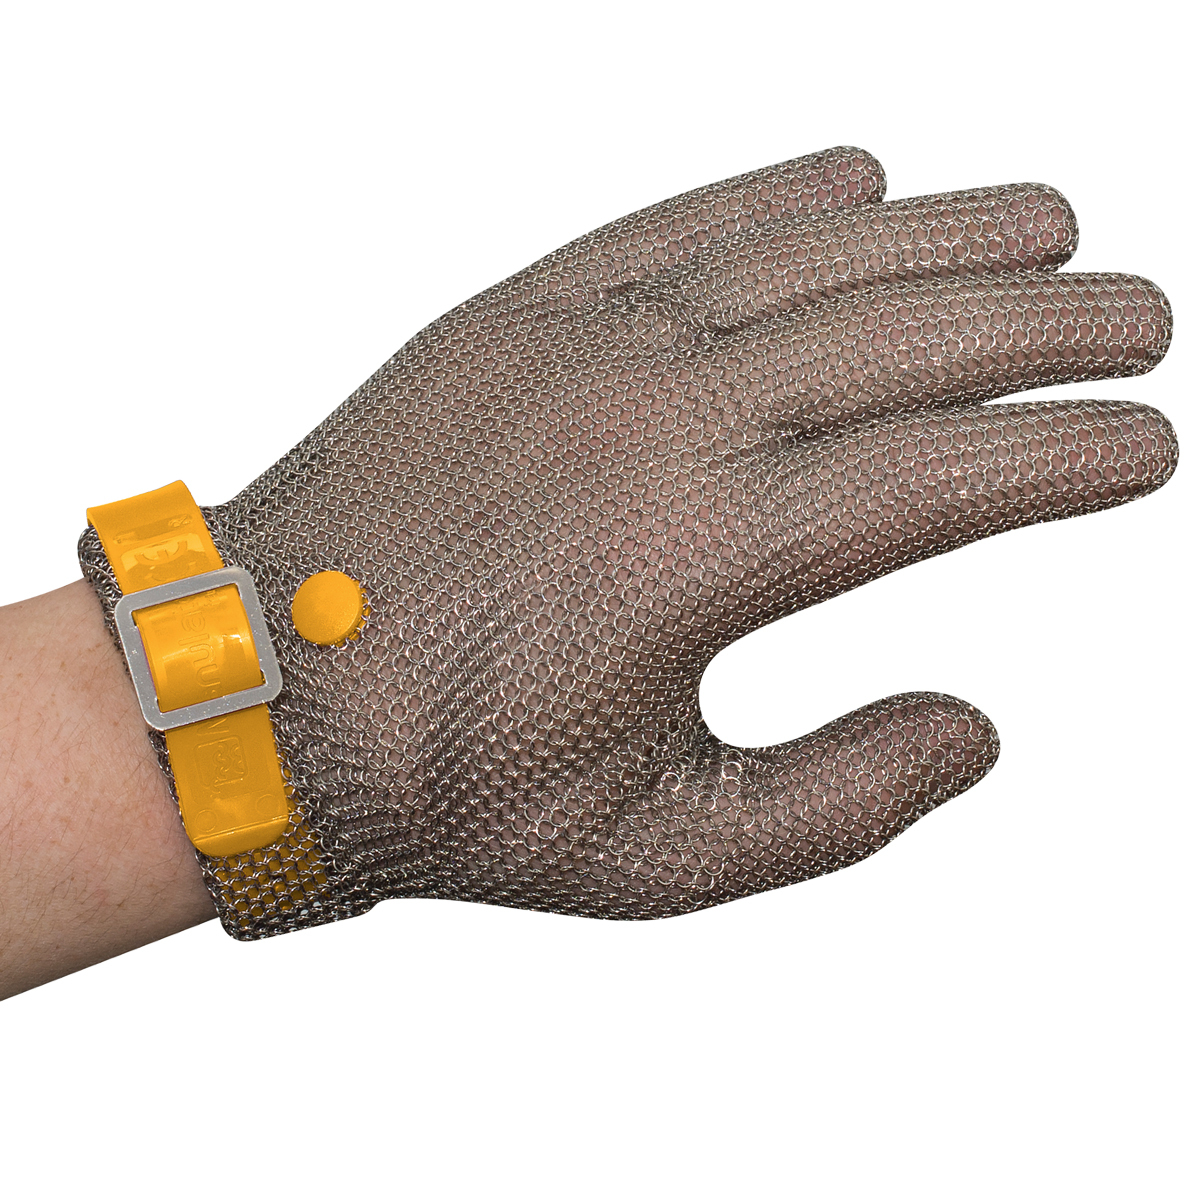 Manulatex Chain Mesh Glove, Wrist Length